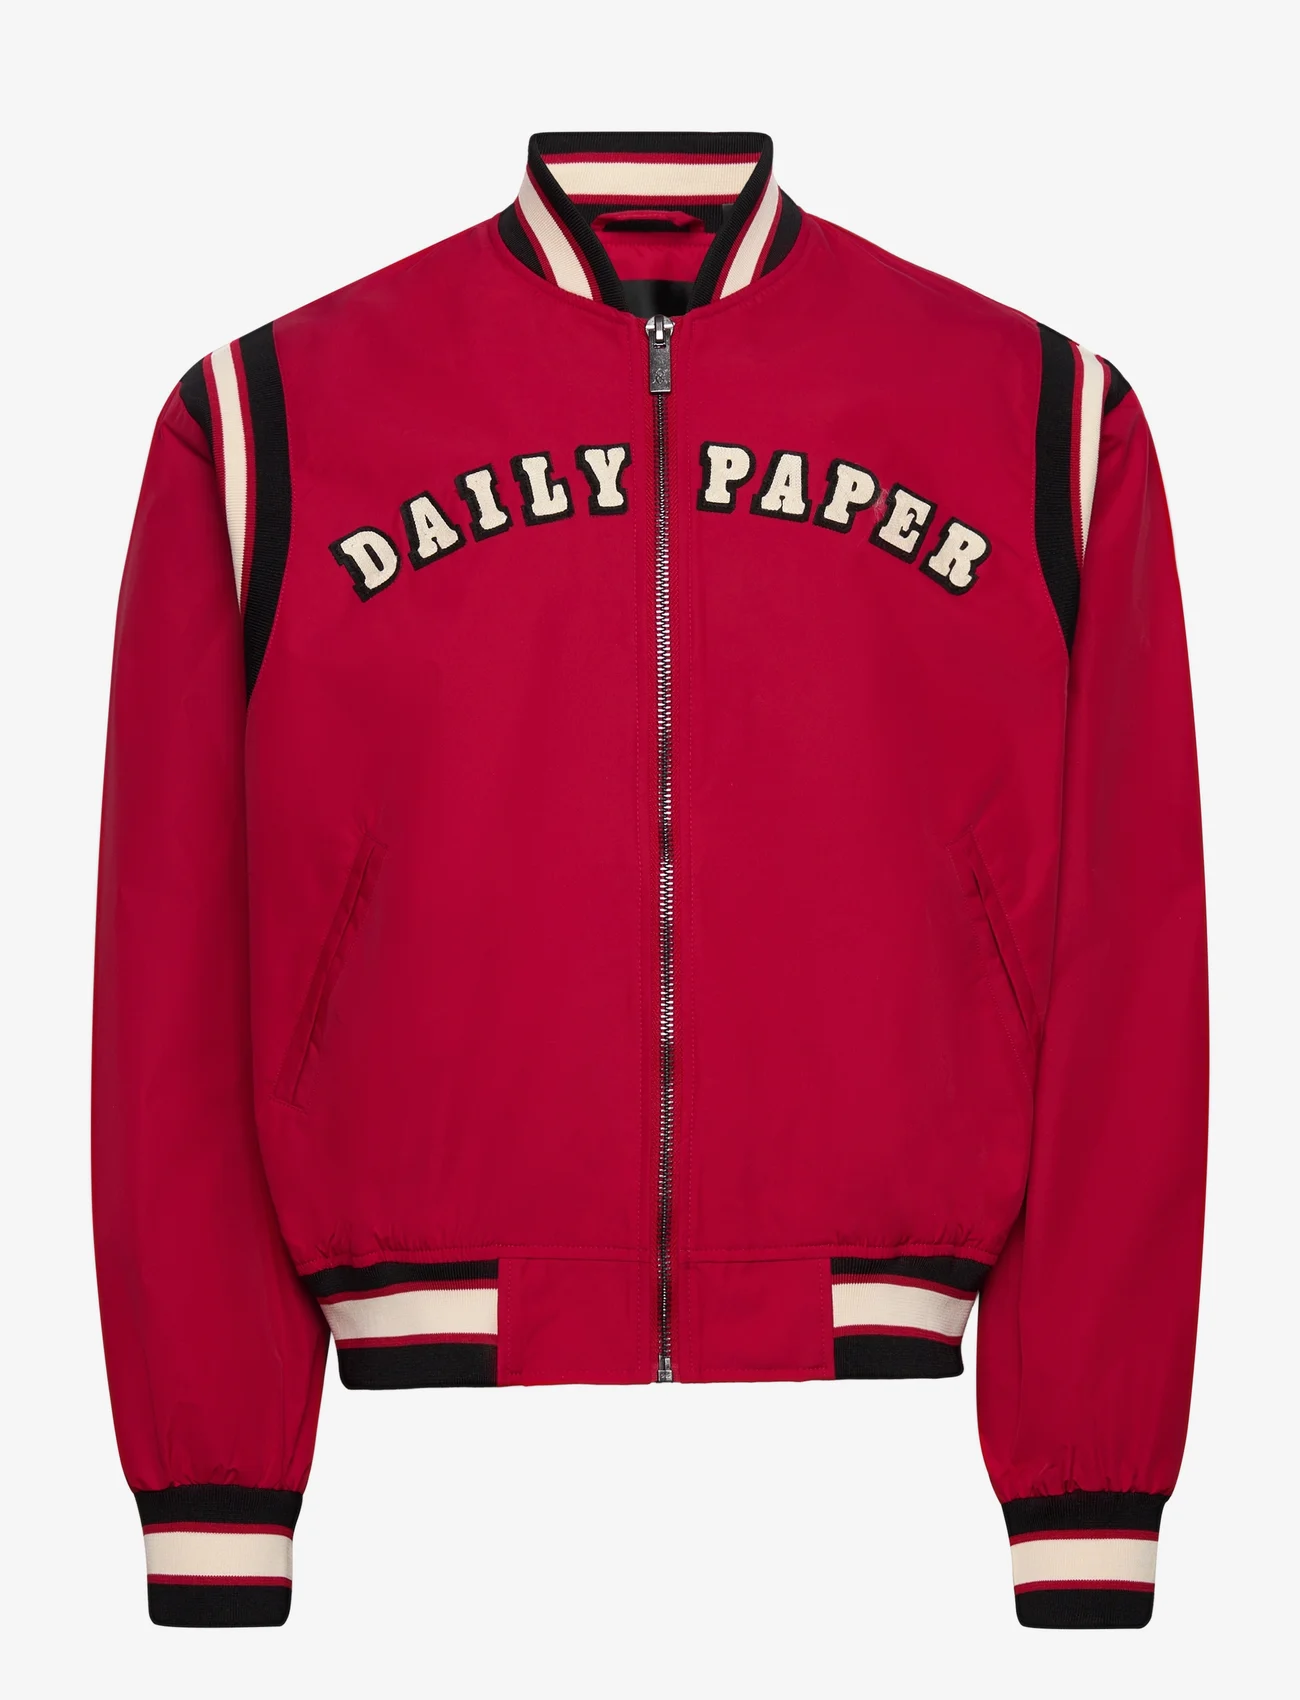 Daily Paper - peregia jacket - jakker - jester red/black - 0